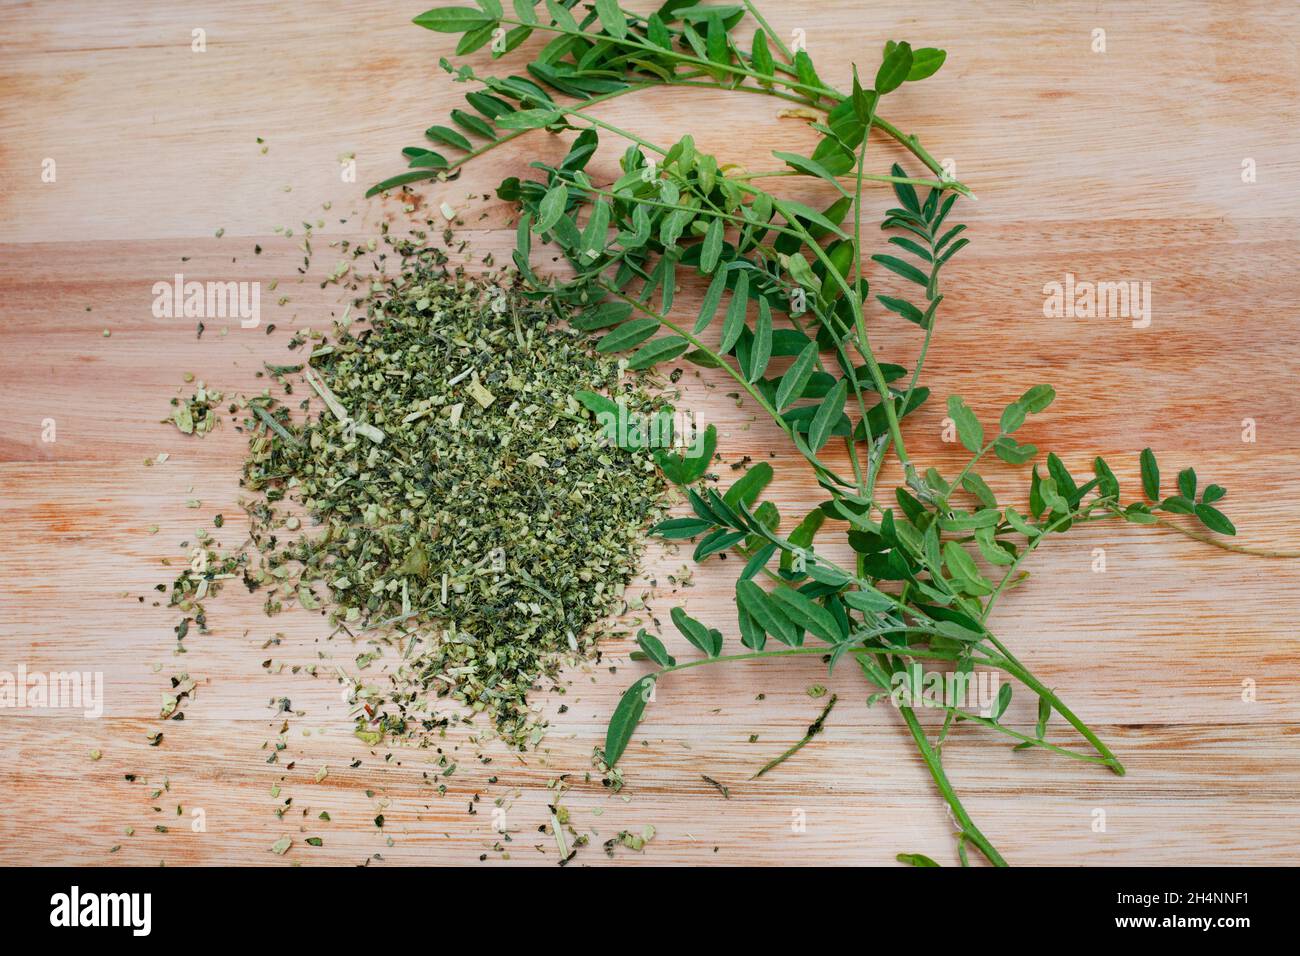 Cancro Bush tè, medicina tradizionale a base di erbe fatto da Sutherlandia pianta Foto Stock